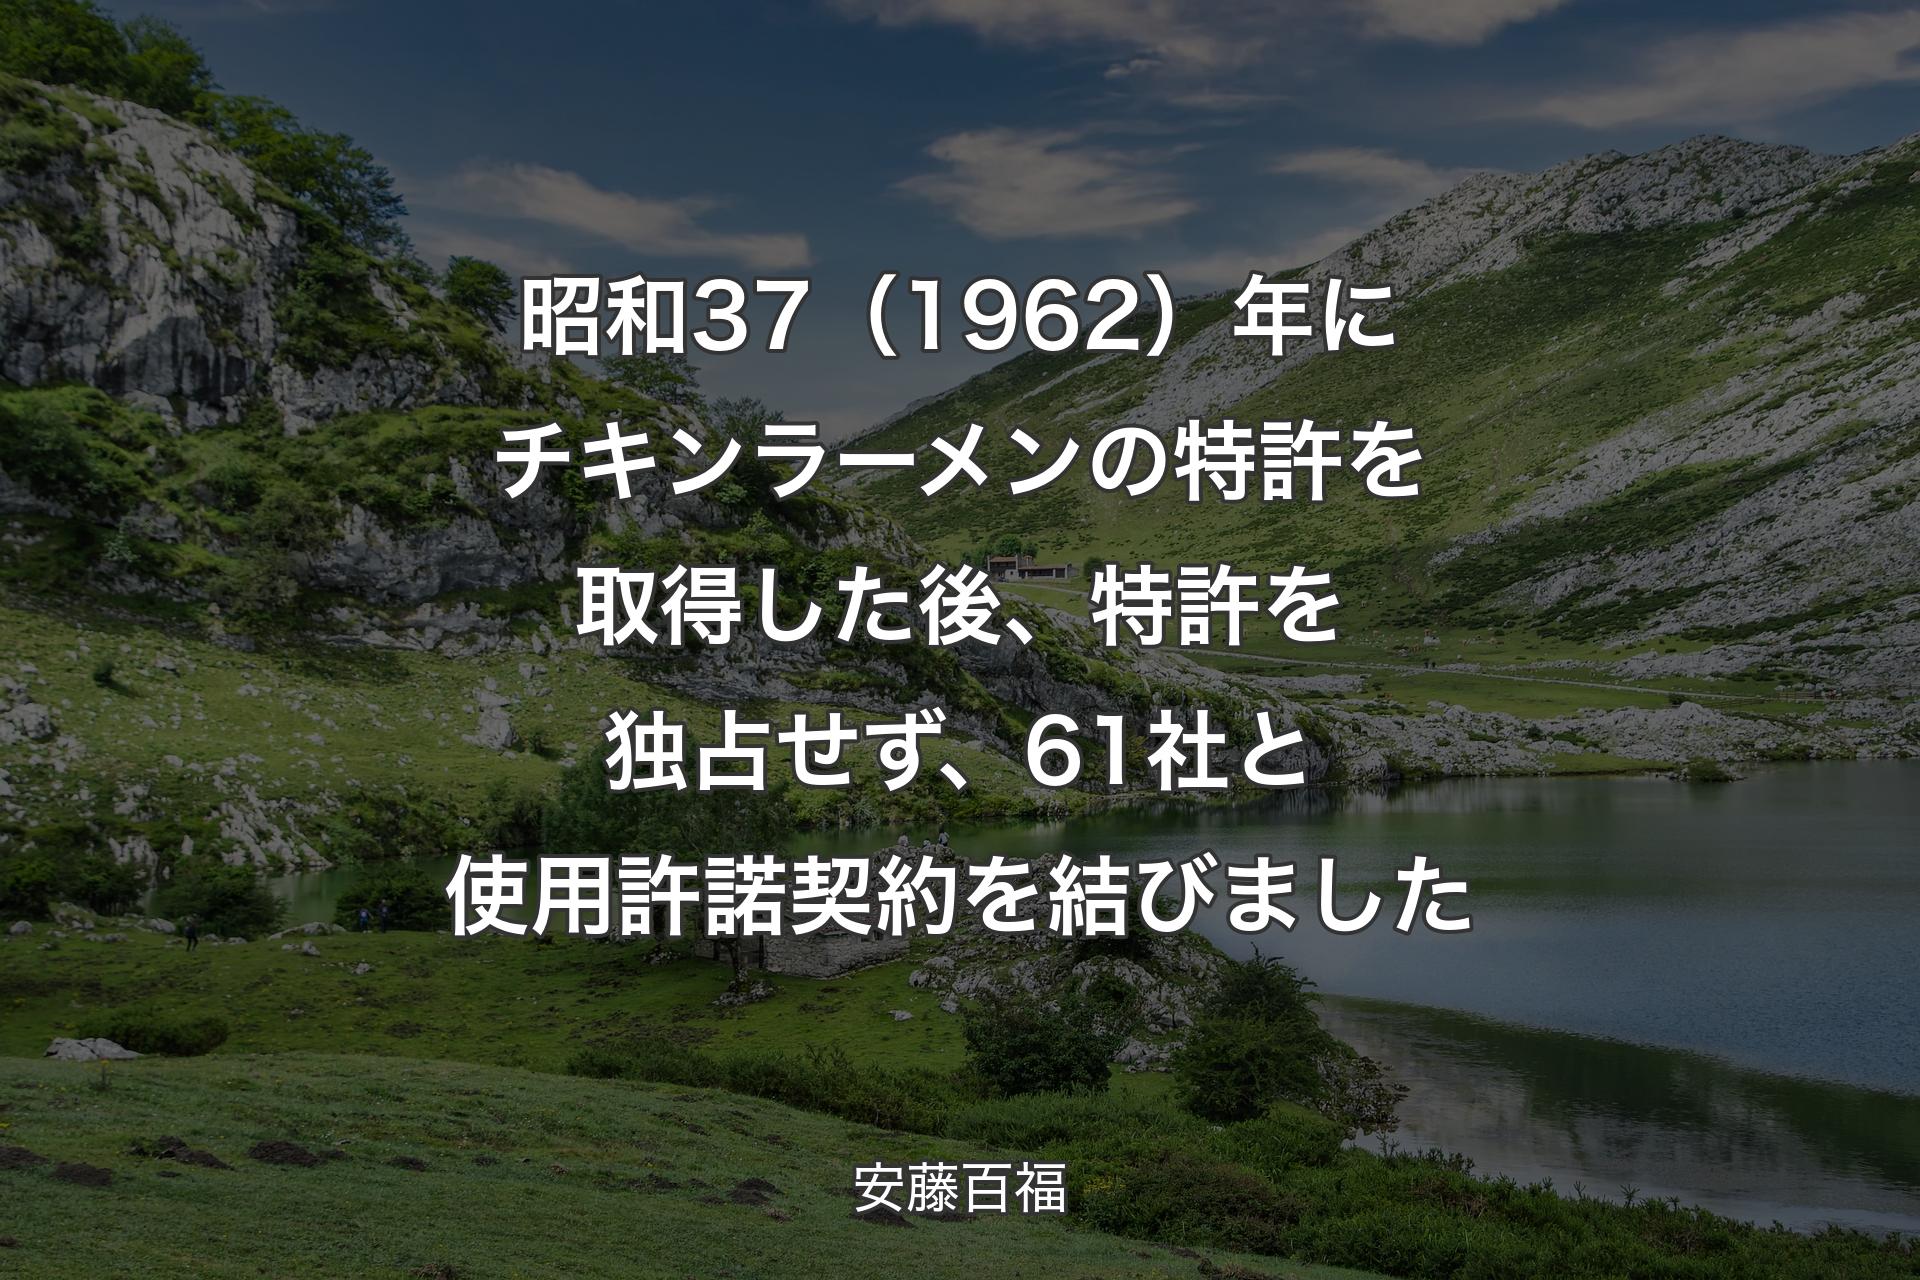 【背景1】昭和37（1962）年にチキンラーメンの特許を取得した後、特許を独占せず、61社と使用許諾契約を結びました - 安藤百福